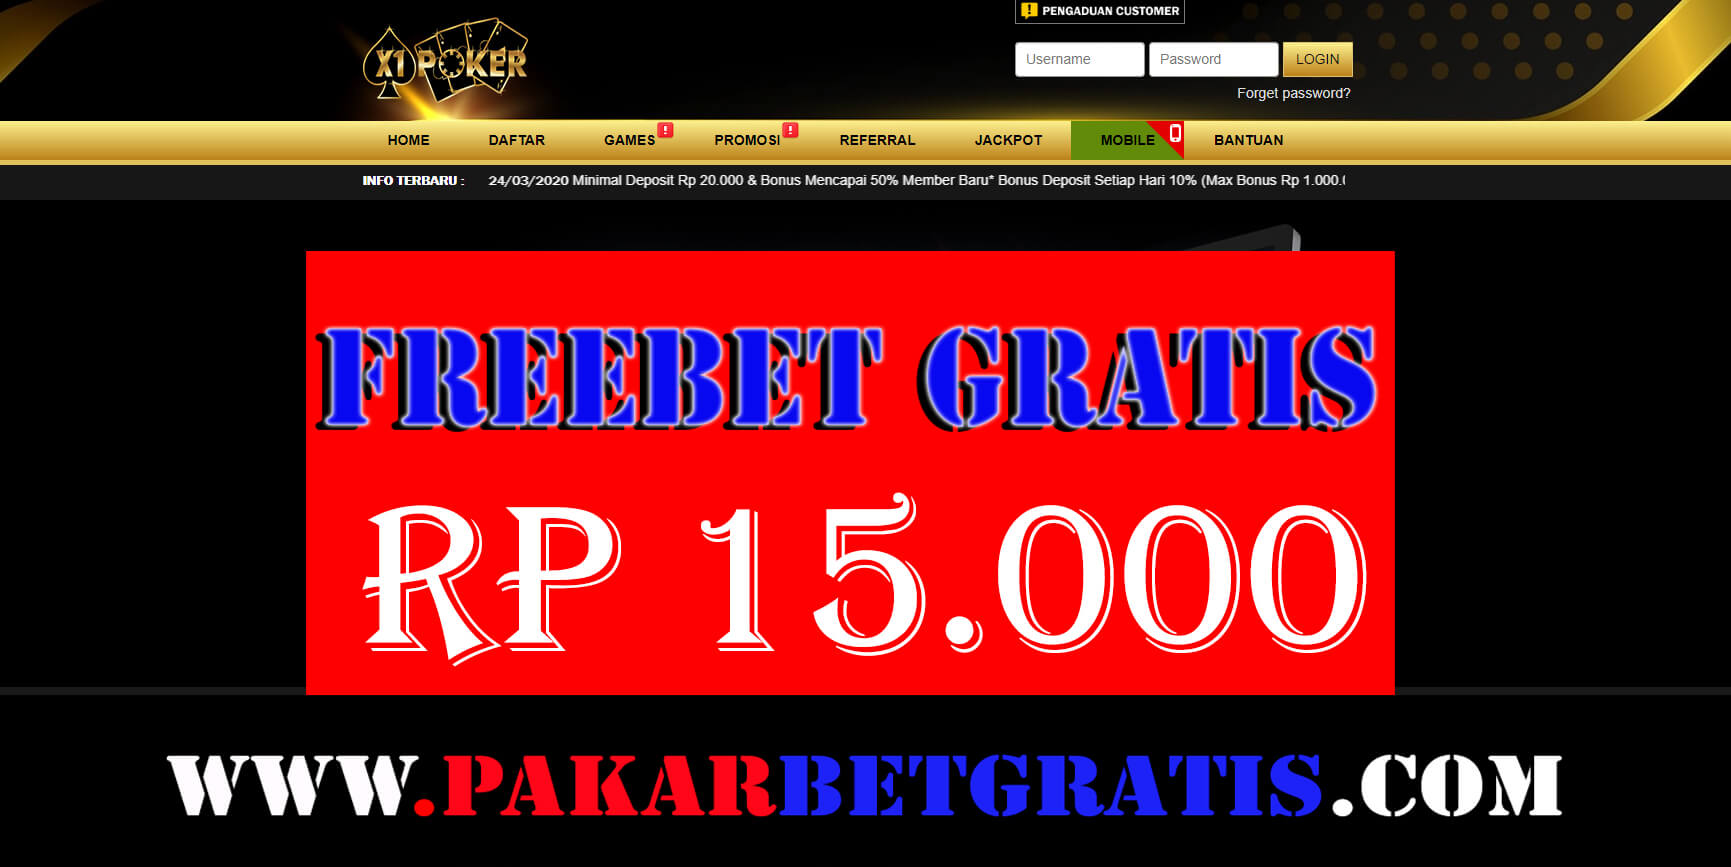 Freebet Gratis x1poker Rp 15.000 Tanpa Deposit